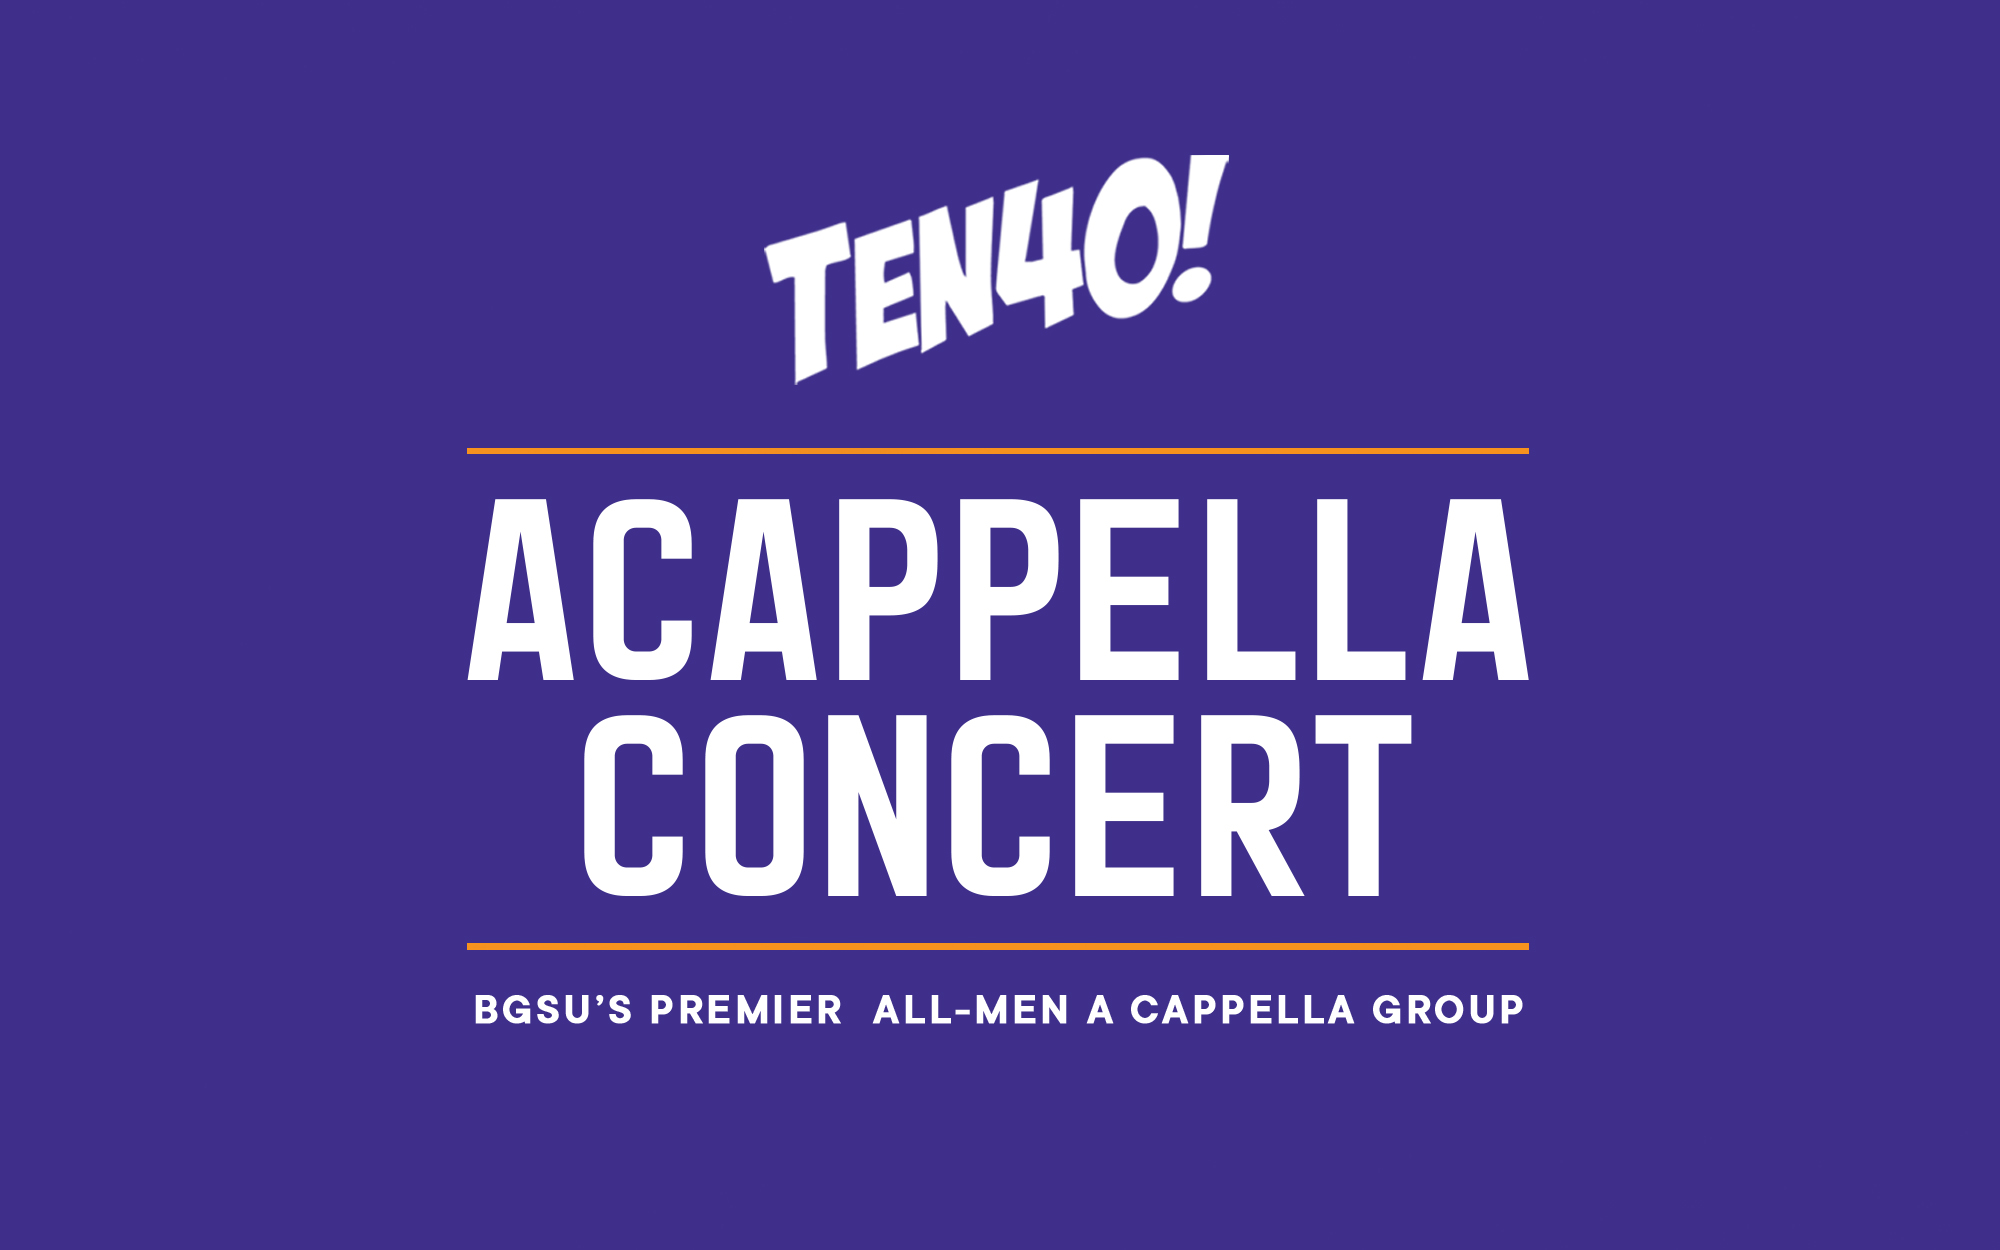 Ten40 Acappella Concert @ FPC – May 11, 2022